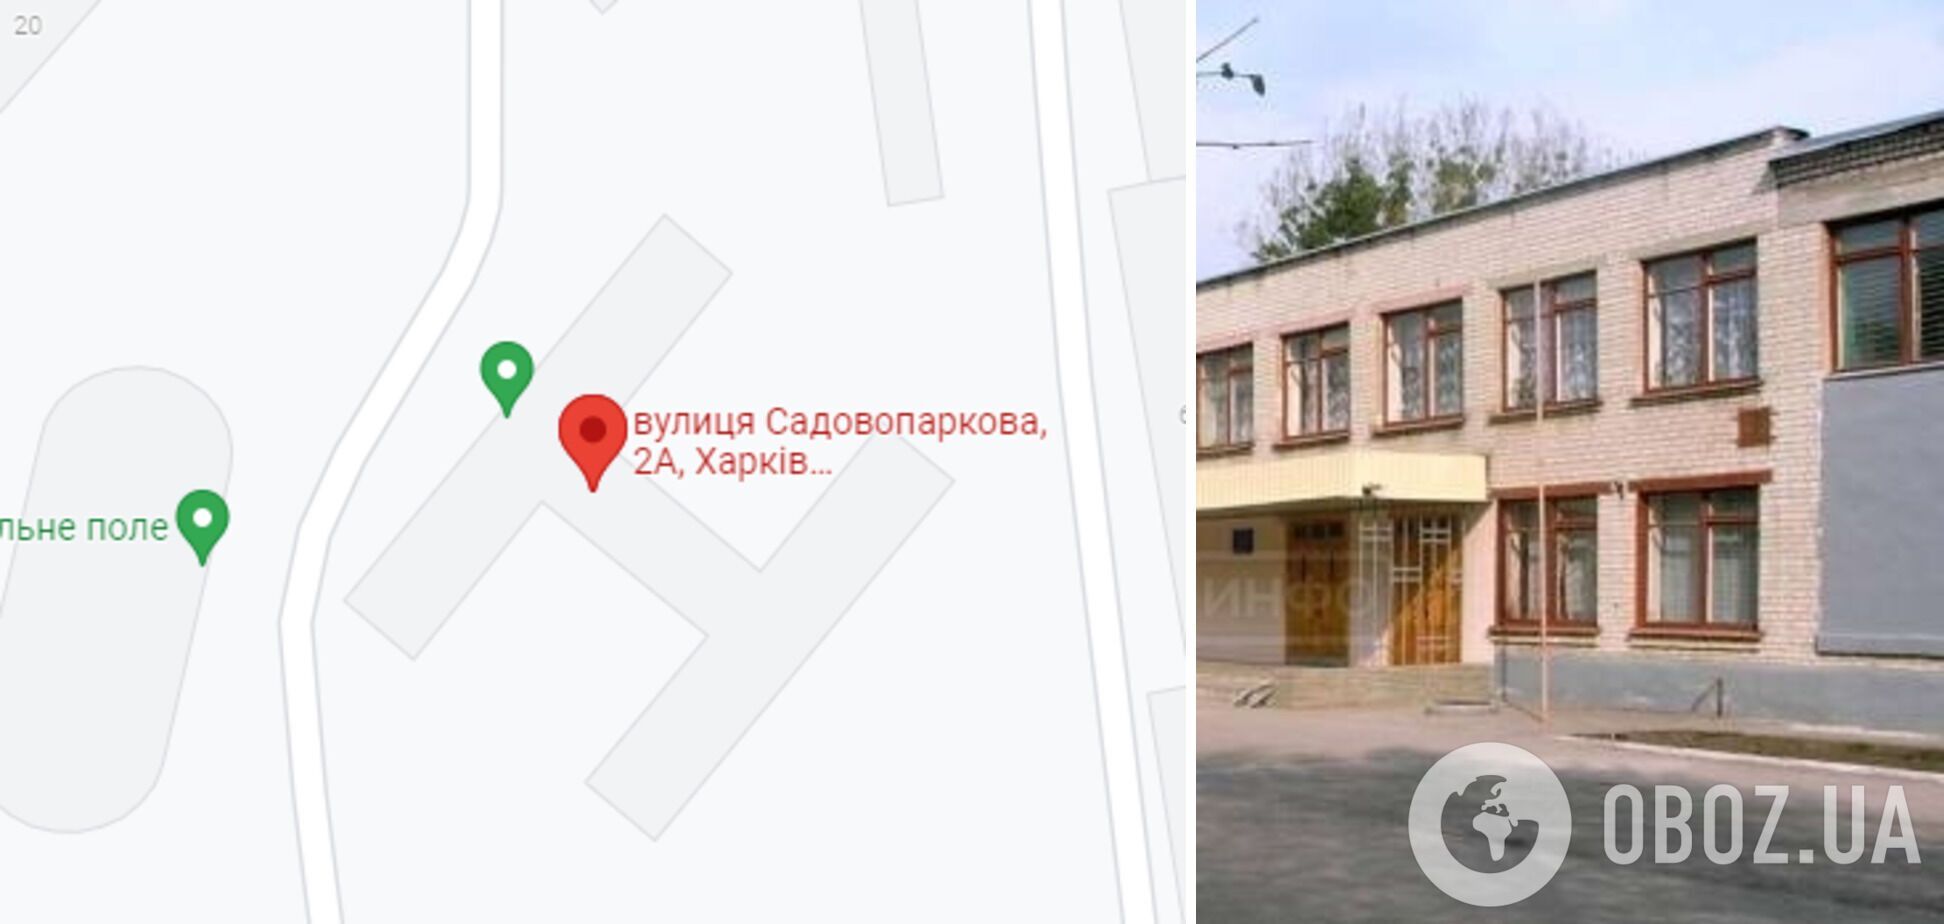 Инцидент произошел в харьковской школе №77